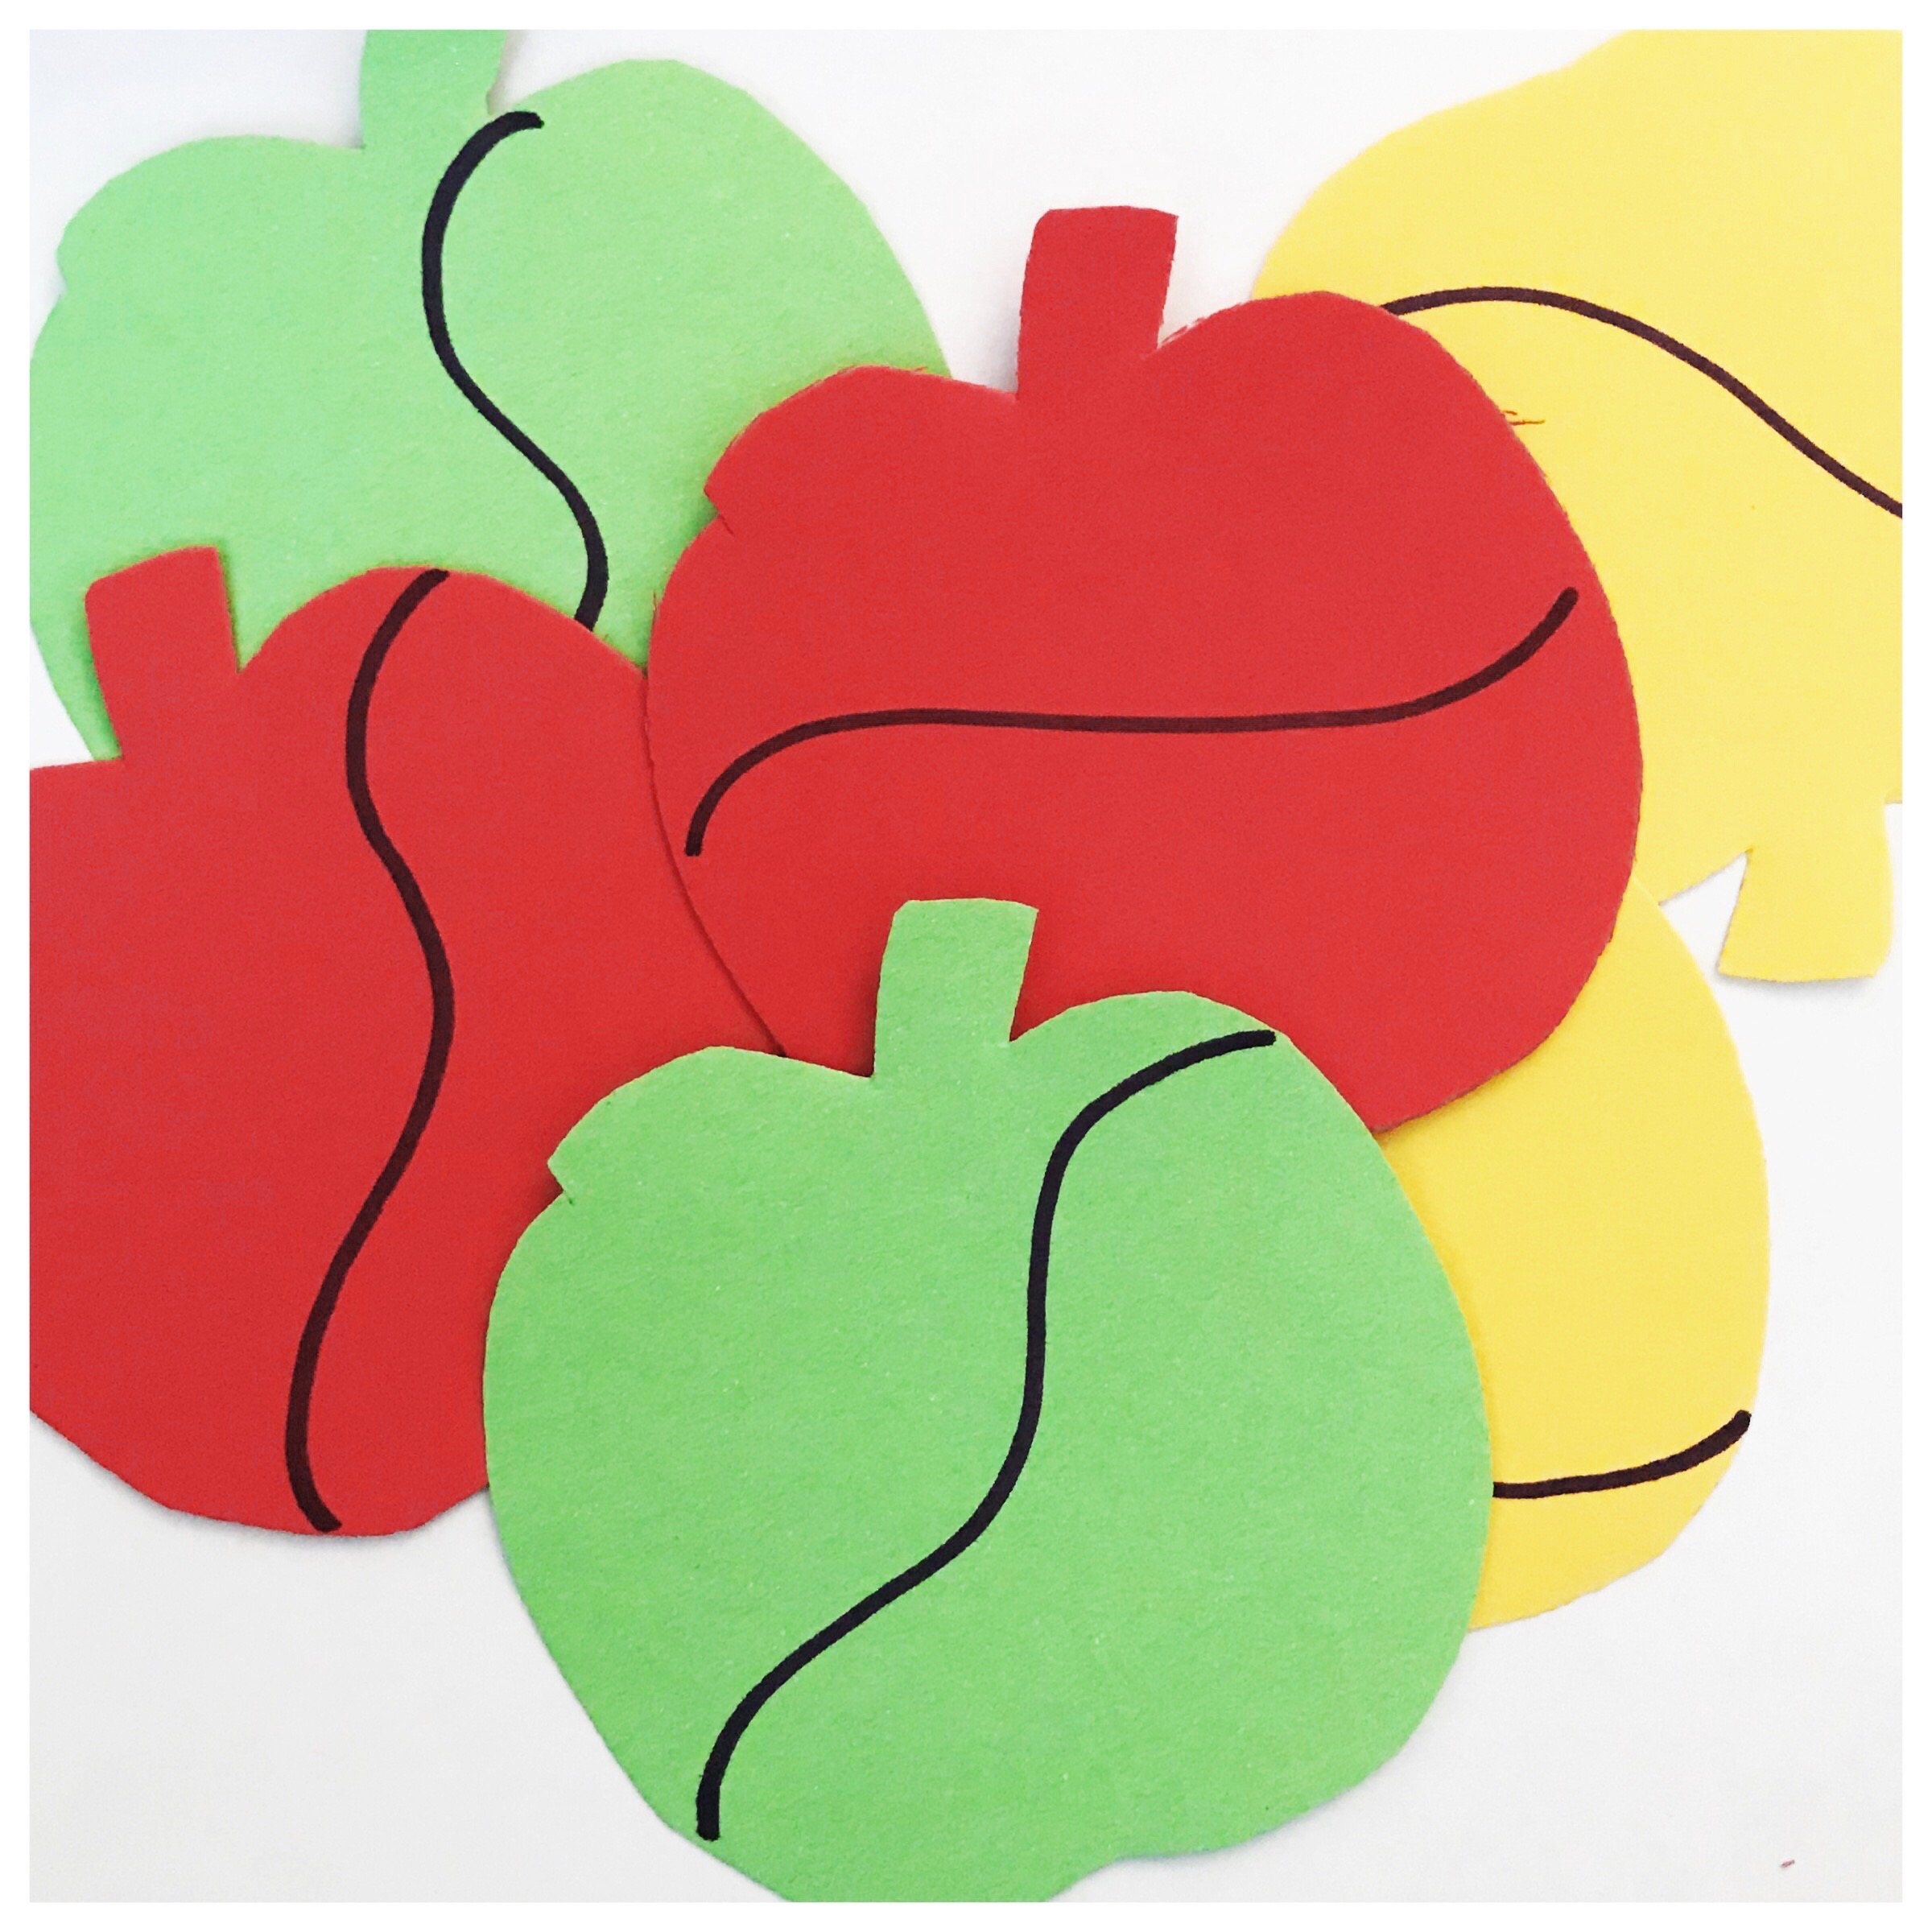 Scissor Skills Preschool Activity Book: Learn Cut Lines, Shapes, Fruits,  Animals